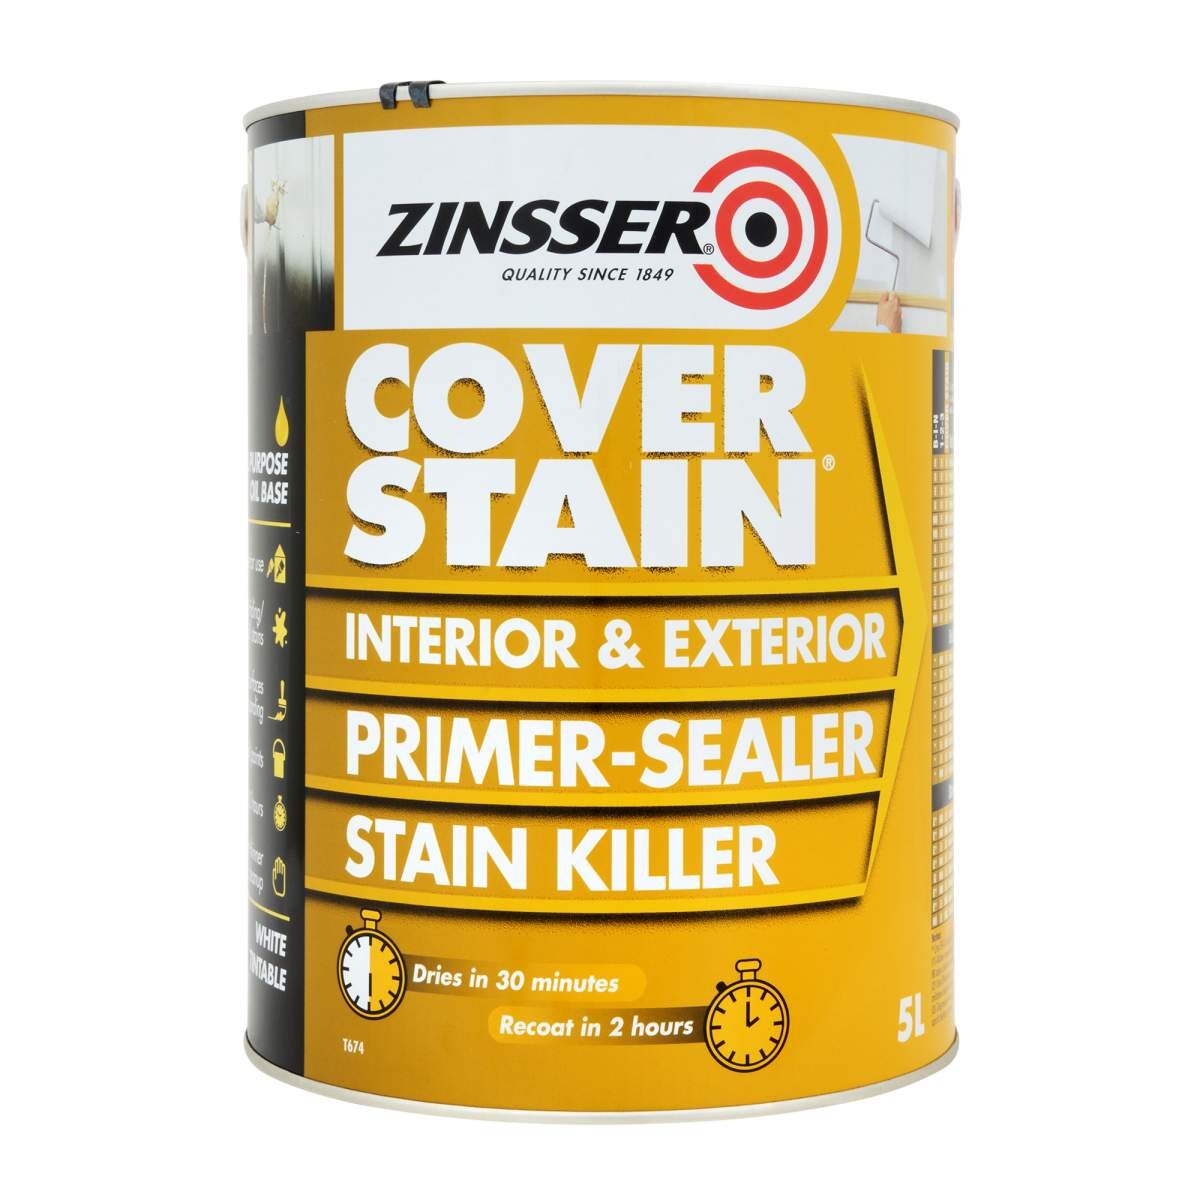 5 Litre Zinsser Cover Stain - Primer, Sealer & Stain Killer. All purpose primer, sealer and stain blocker.